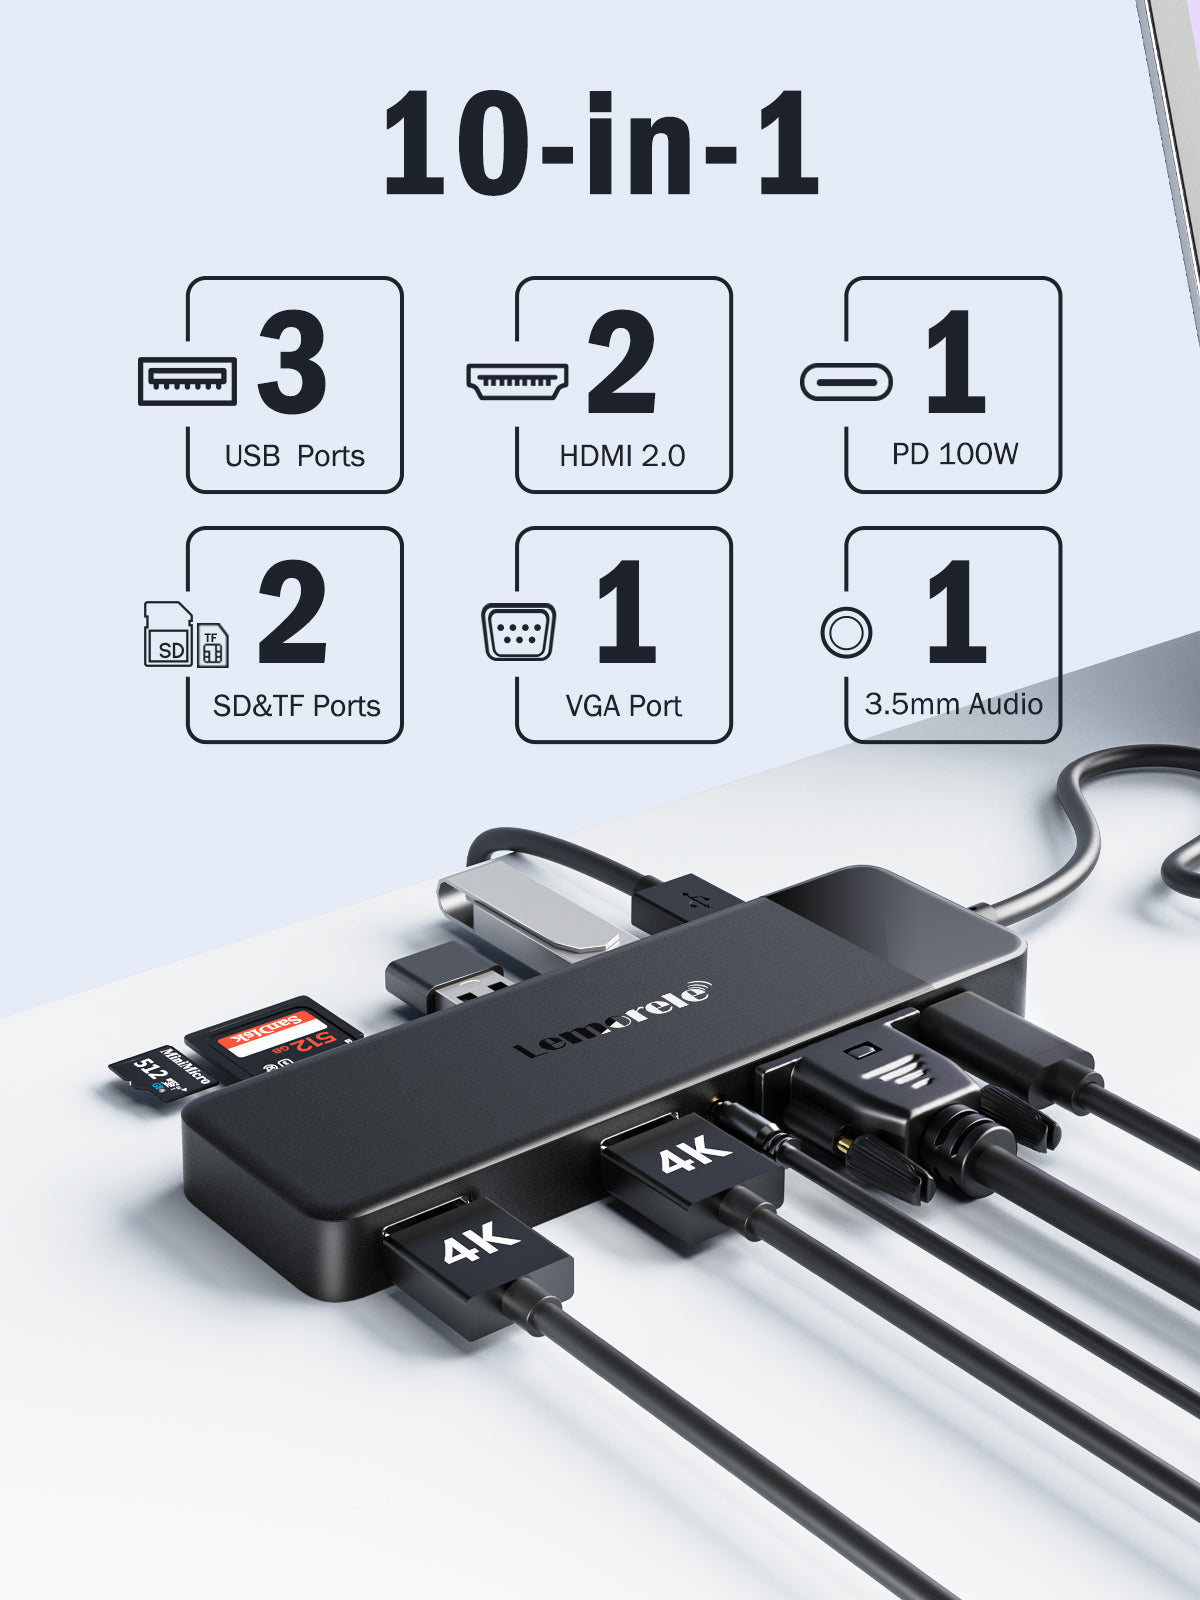 Lemorele Dock Station d'accueil USB C avec Double HDMI,11-en-1 Adaptateur  Hub USB-C vers Dual HDMI (TC65)